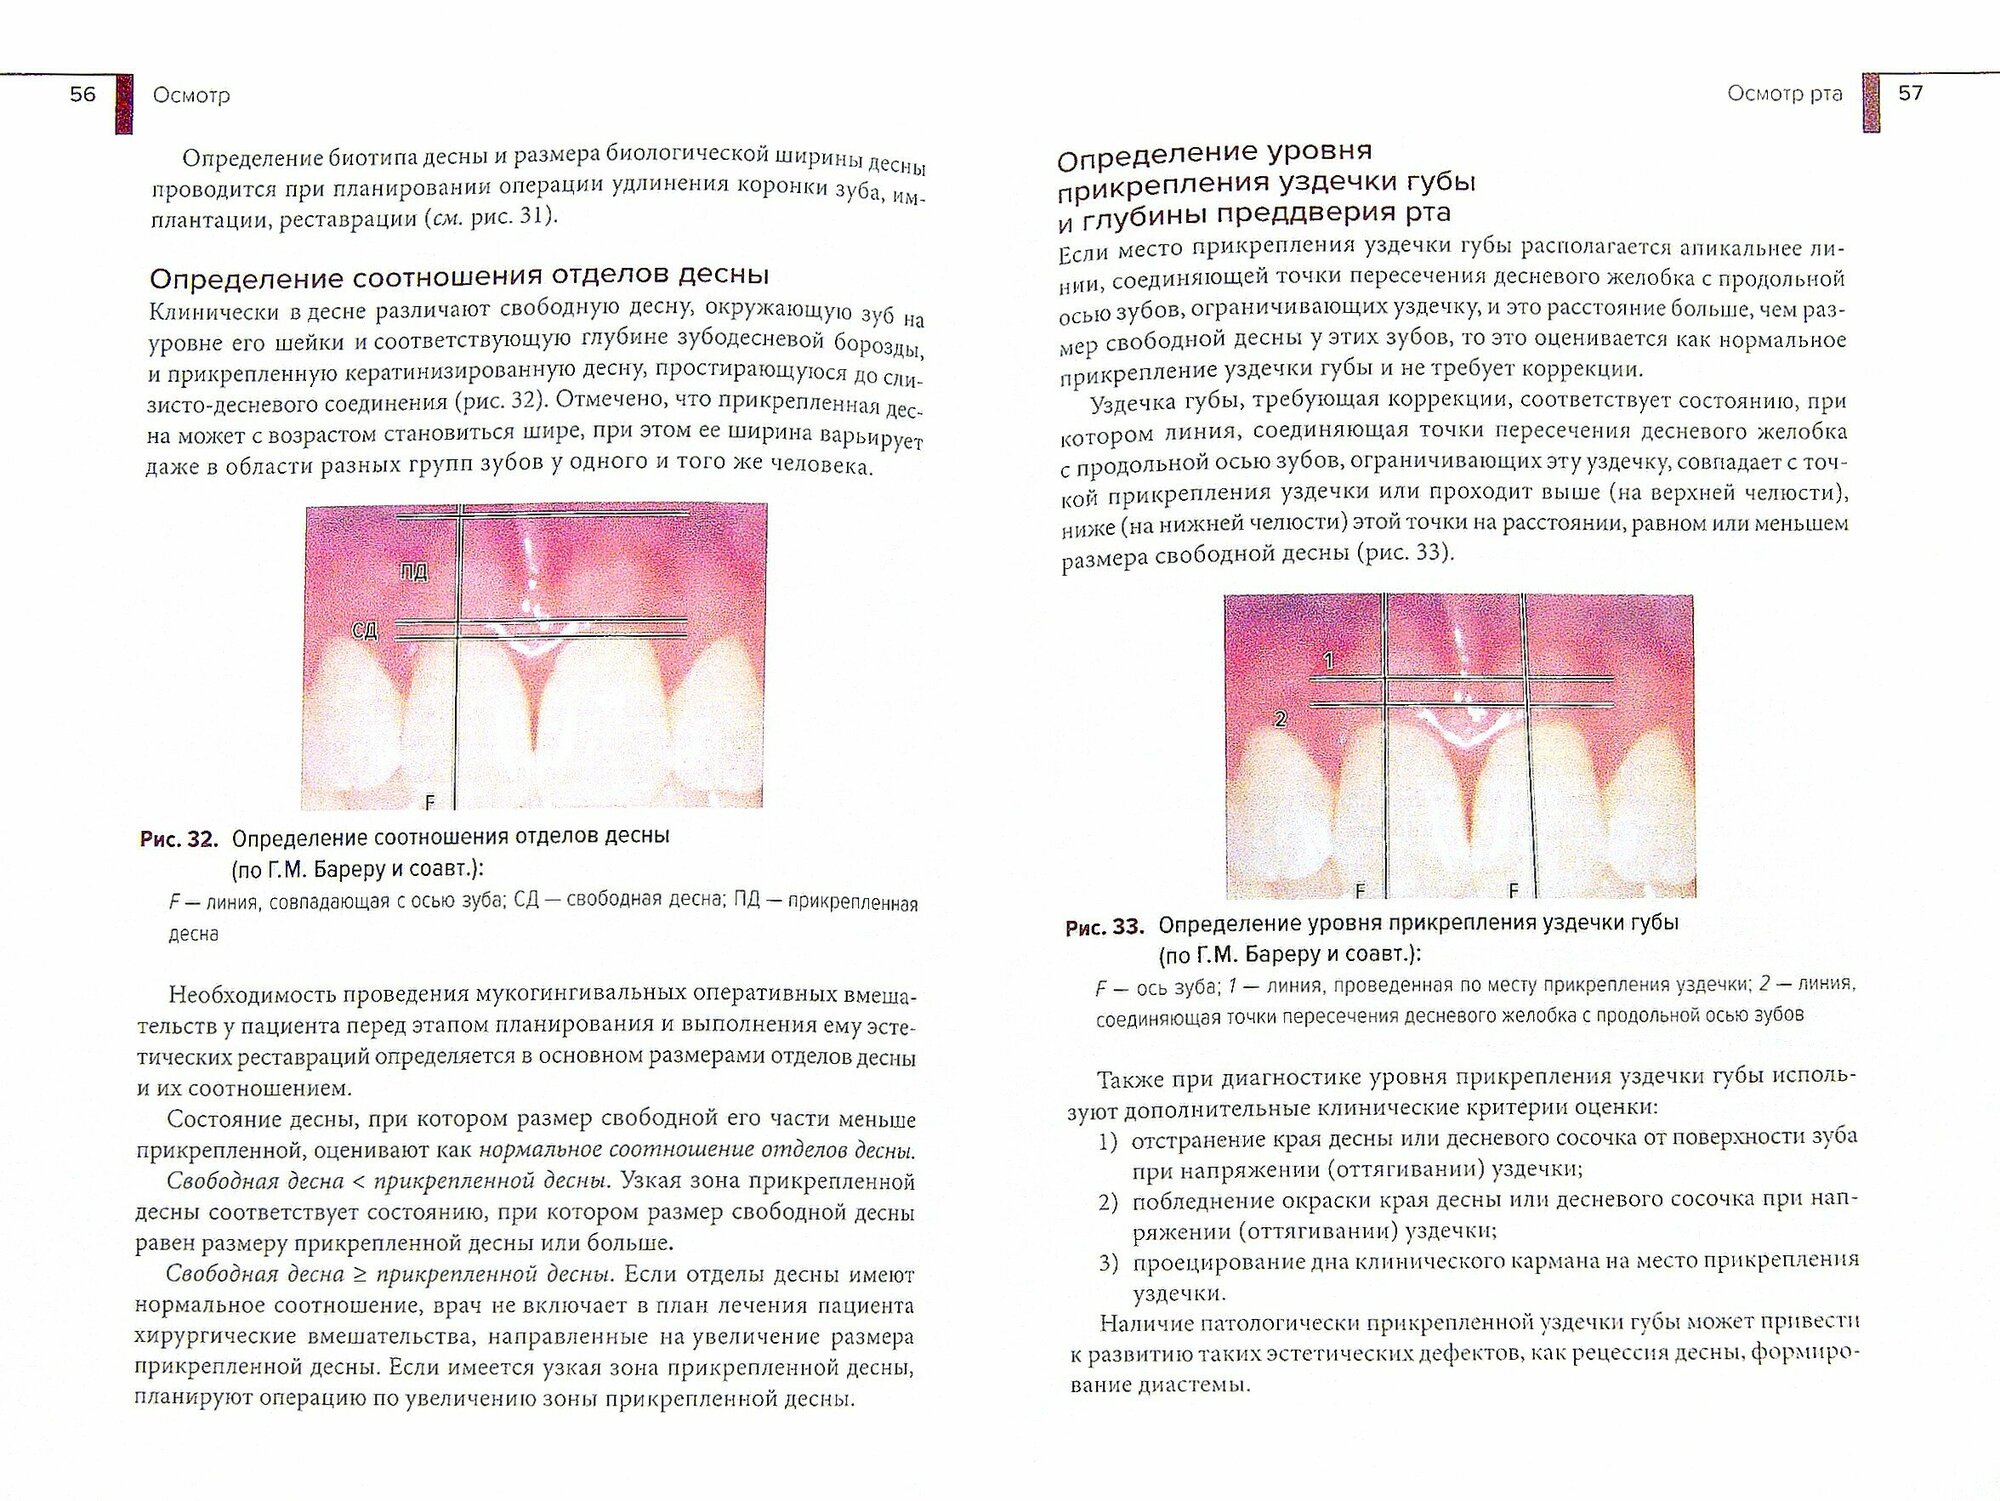 Методы обследования пациента в эстетической стоматологии. Учебное пособие - фото №2